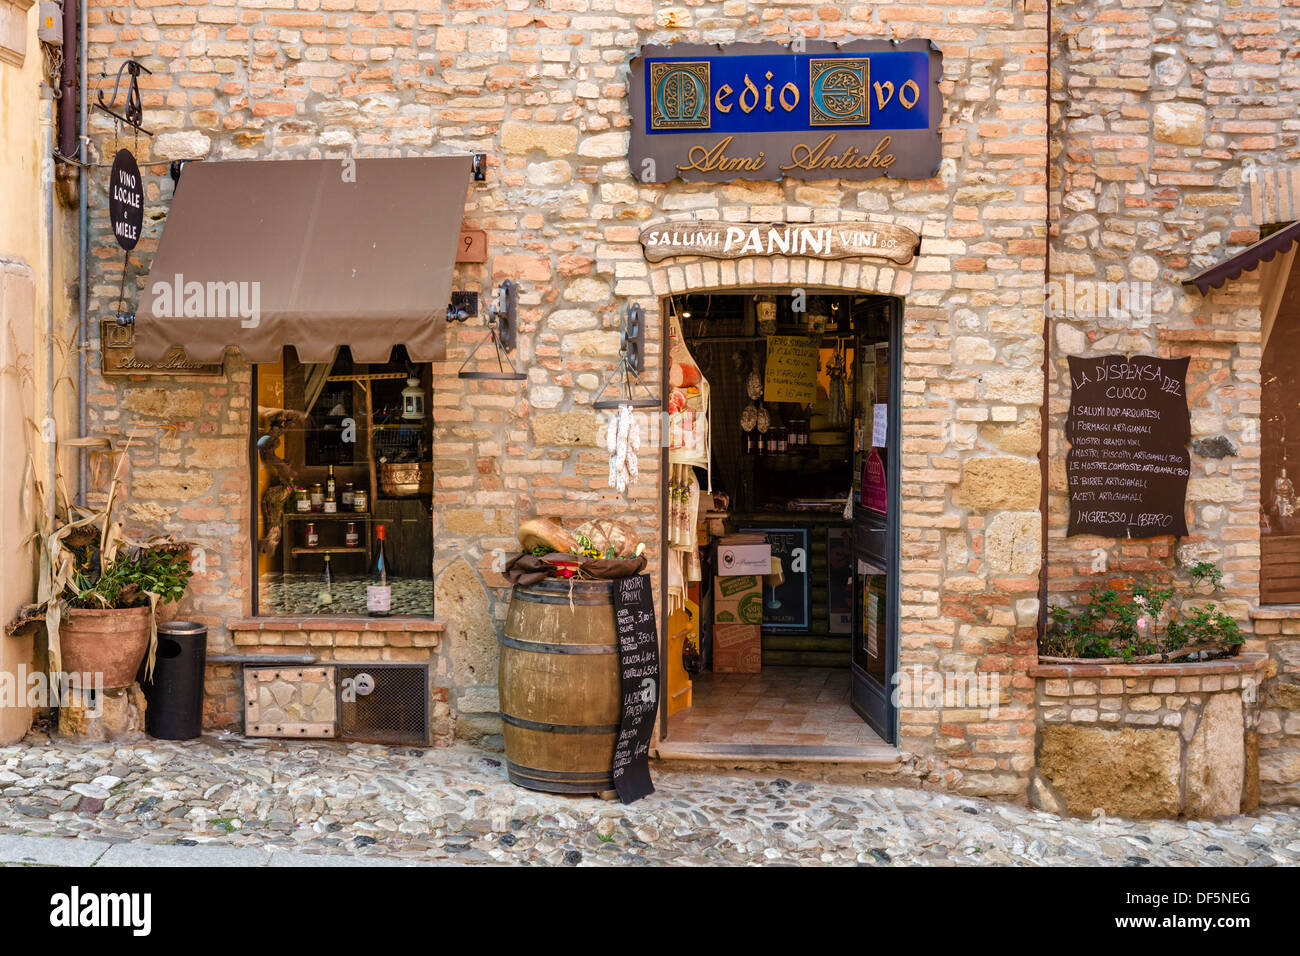 Tradizionale negozio di vendita di pane, vino e carni nel centro della città vecchia medievale di Castell'Arquato, Piacenza, Emilia Romagna, Italia Foto Stock